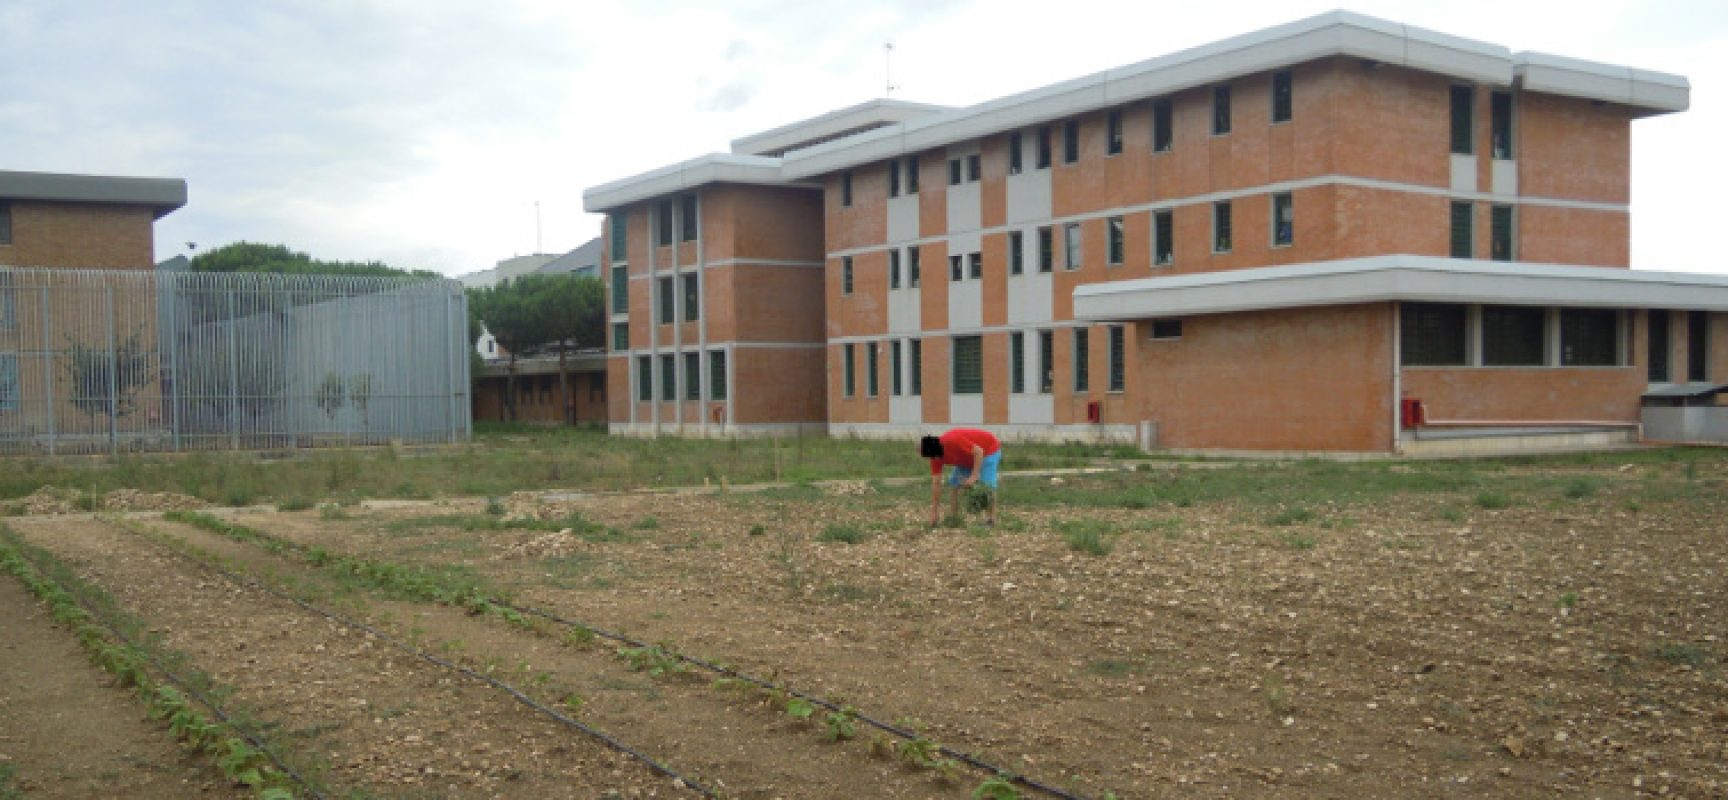 La cooperativa Irsea realizza corso di giardinaggio per i detenuti della Casa circondariale di Trani